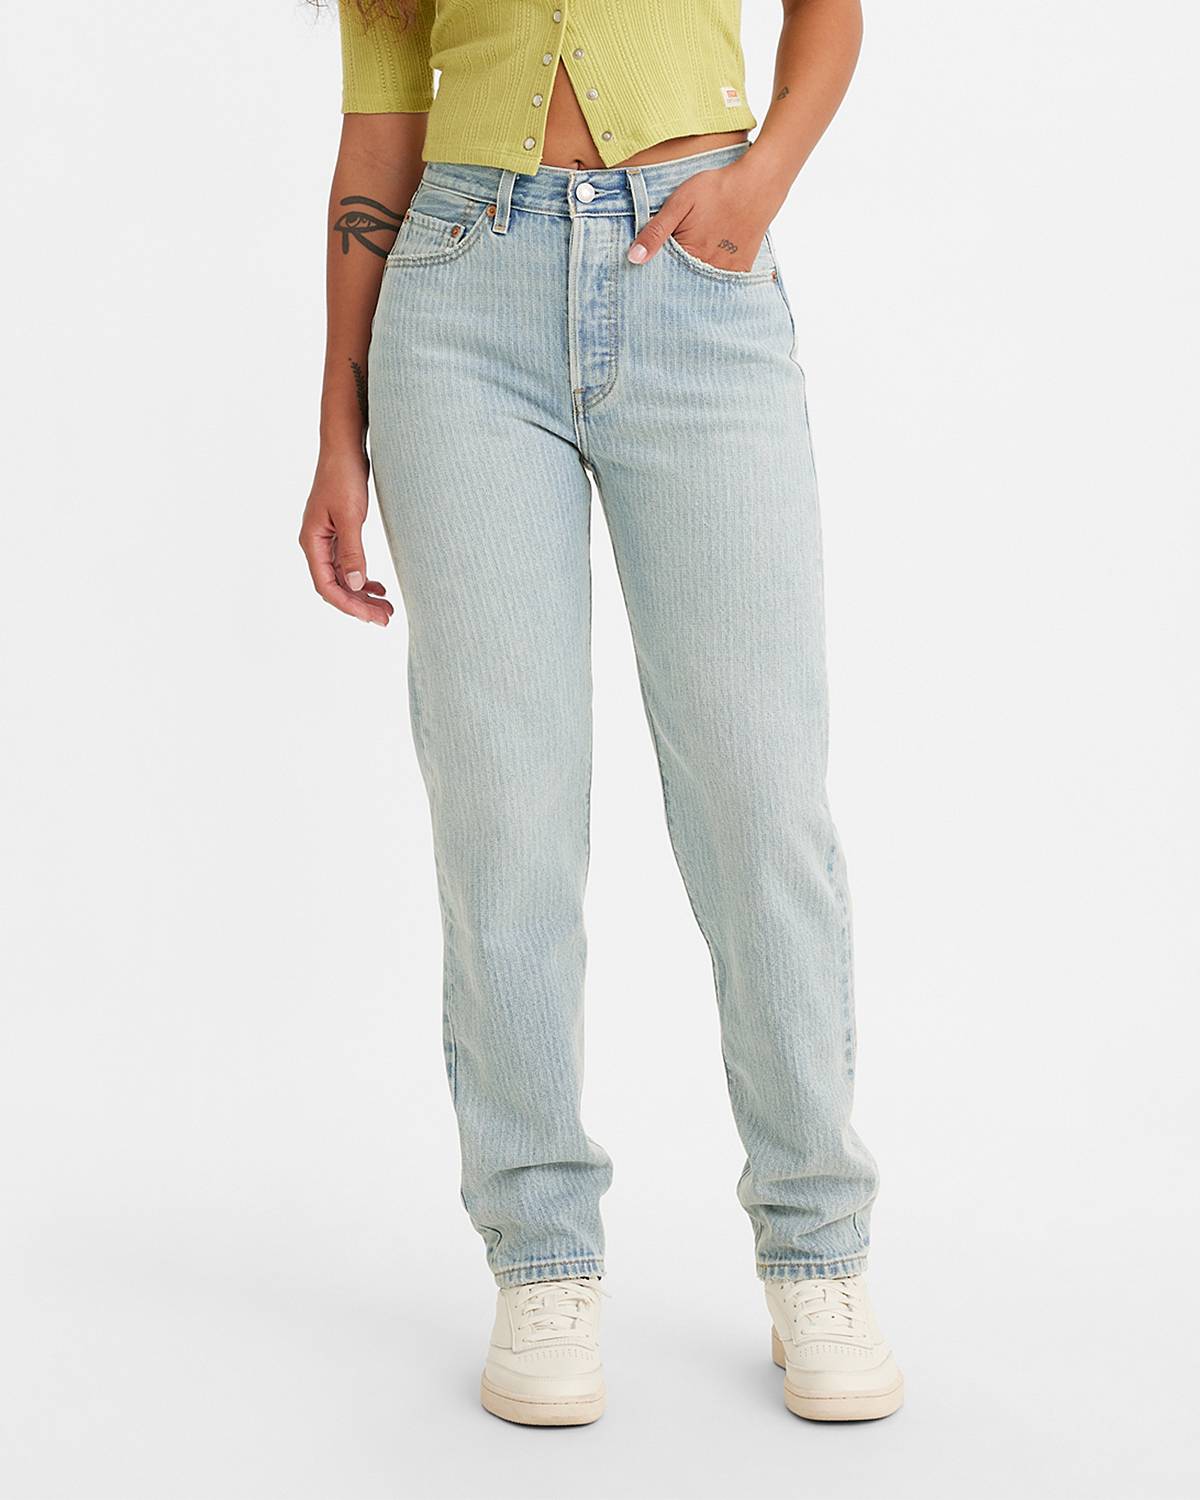 Model wearing 501® '81 jeans